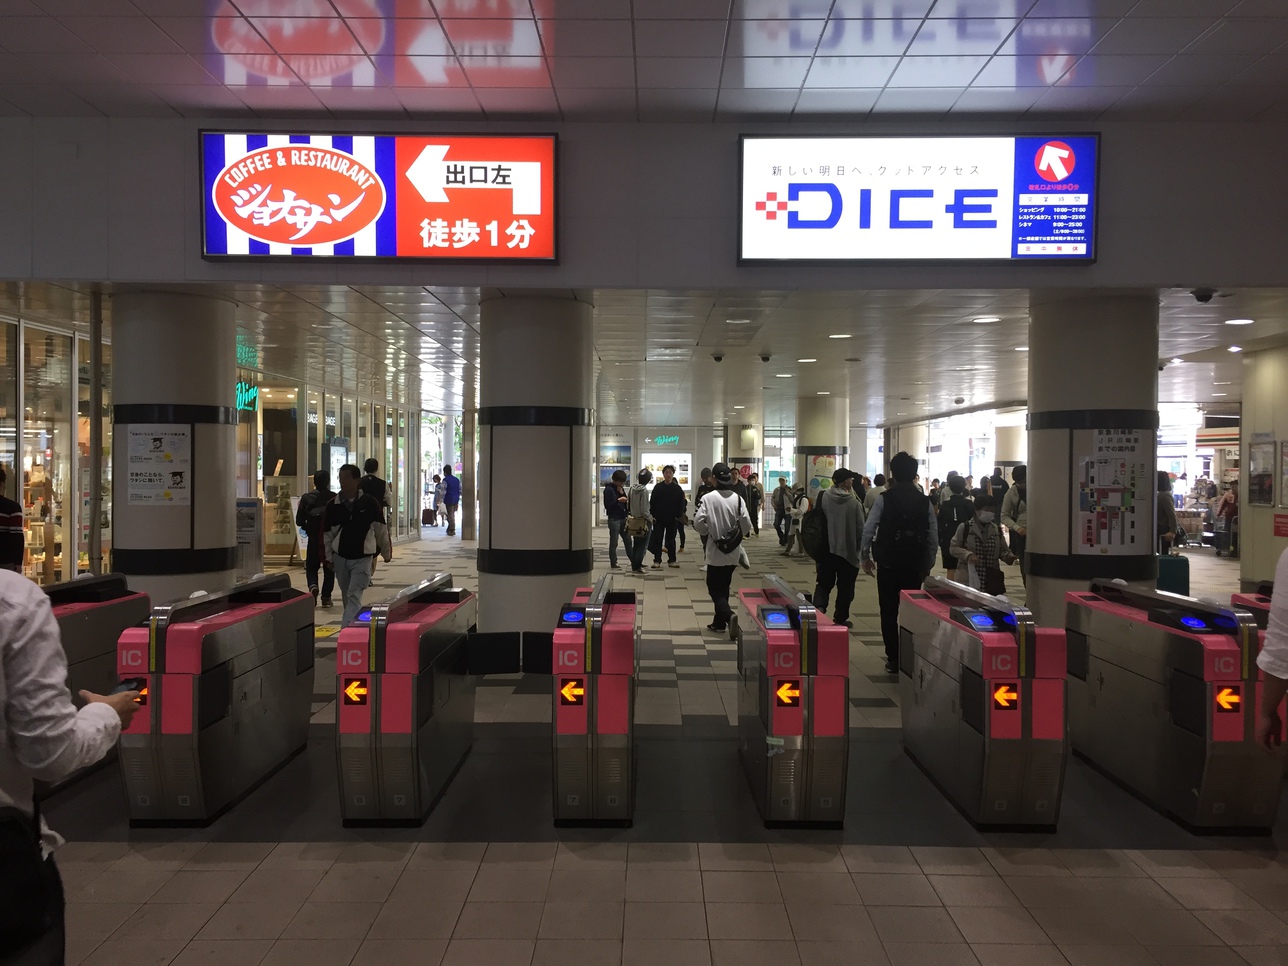 【京急川崎駅中央改札】改札を出て直ぐ左の駅ビル「Wing川崎」内3Fにフロントがございます。